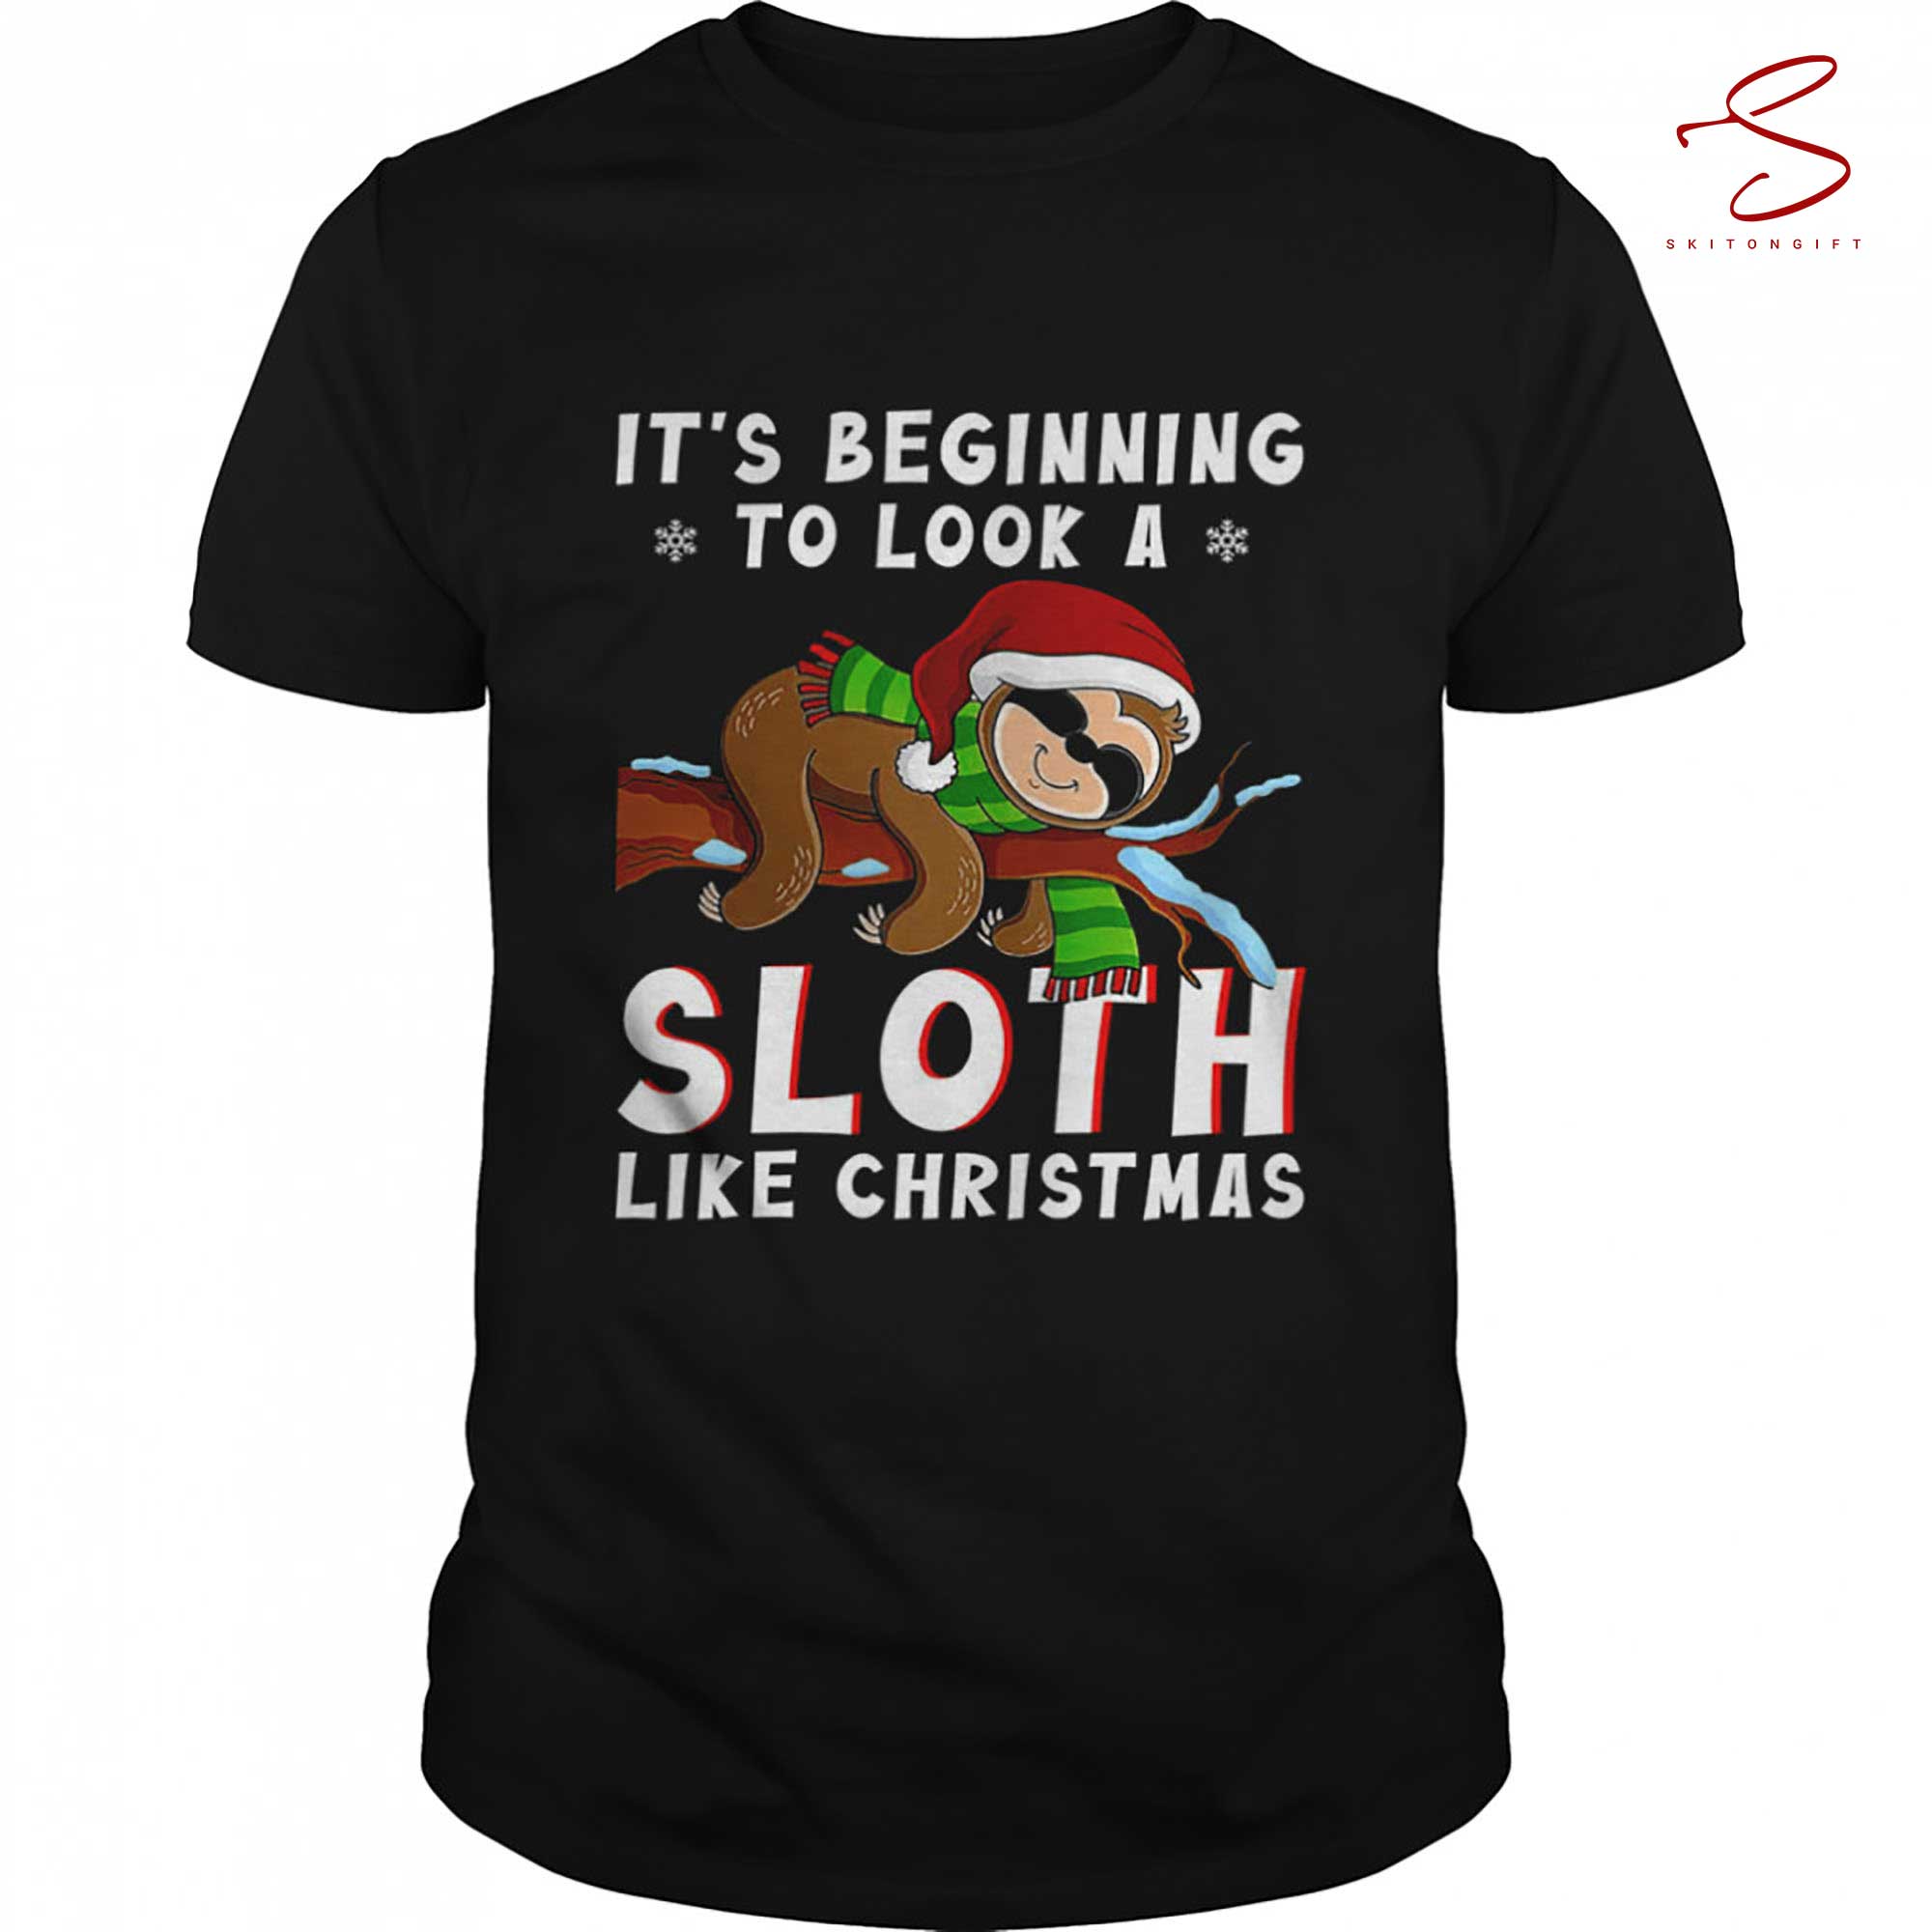 Skitongift Its Beginning To Look A Sloth Like Christmas Shirt